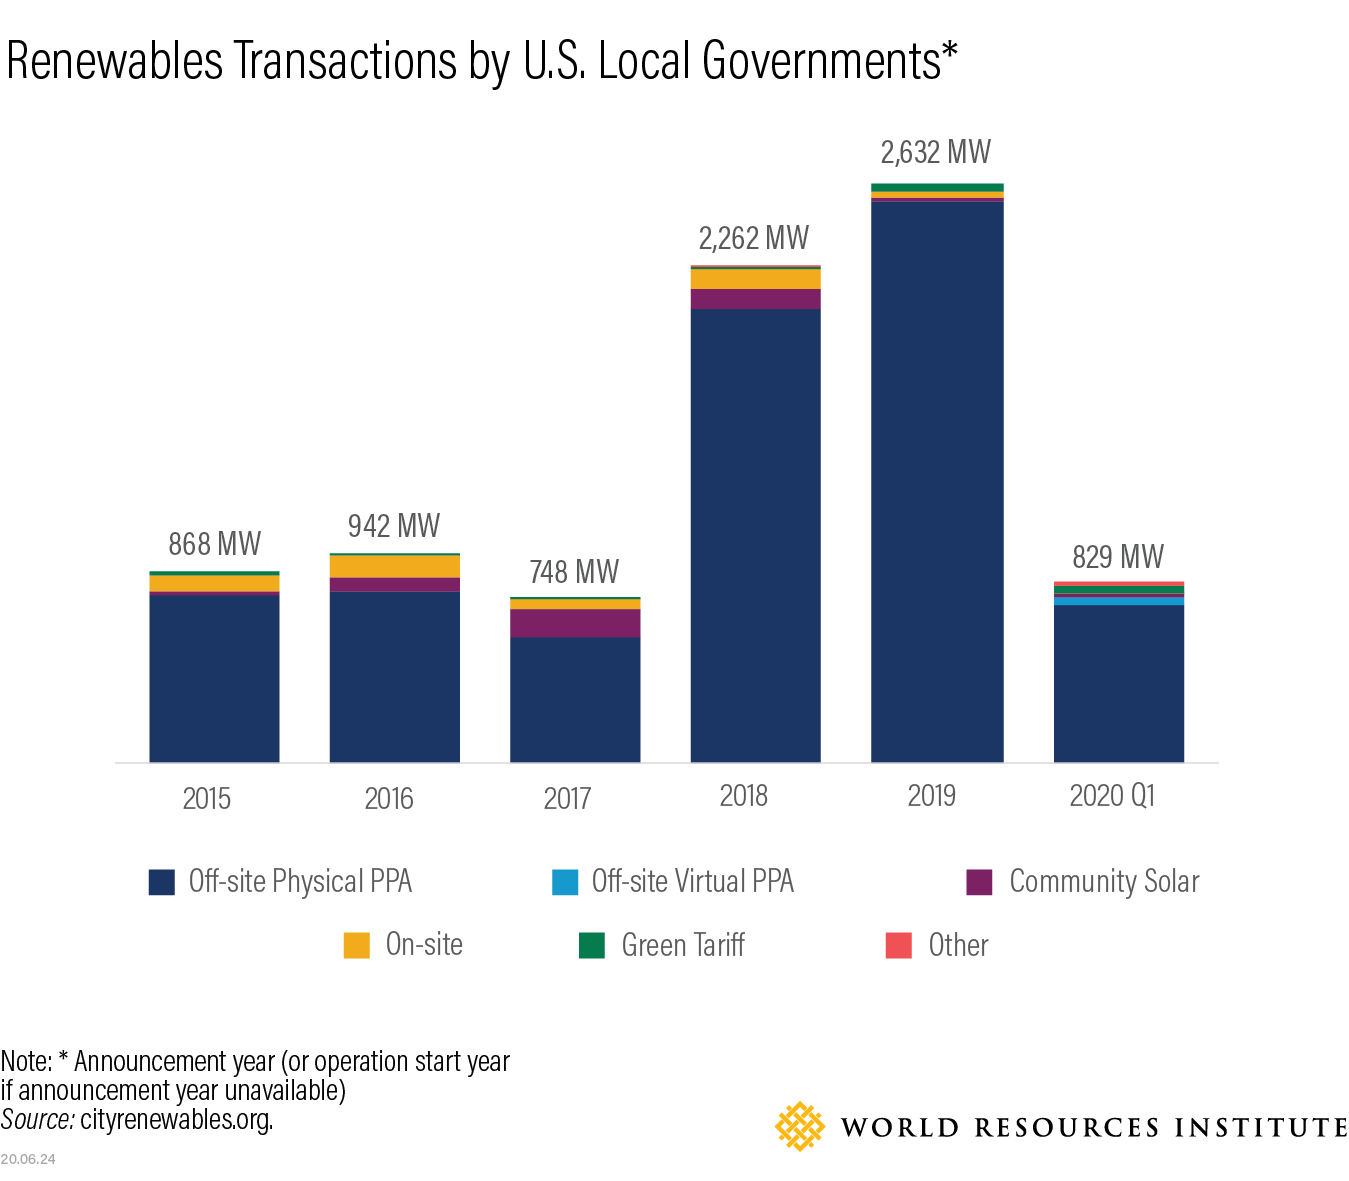 条形图显示了美国地方政府的可再生能源交易